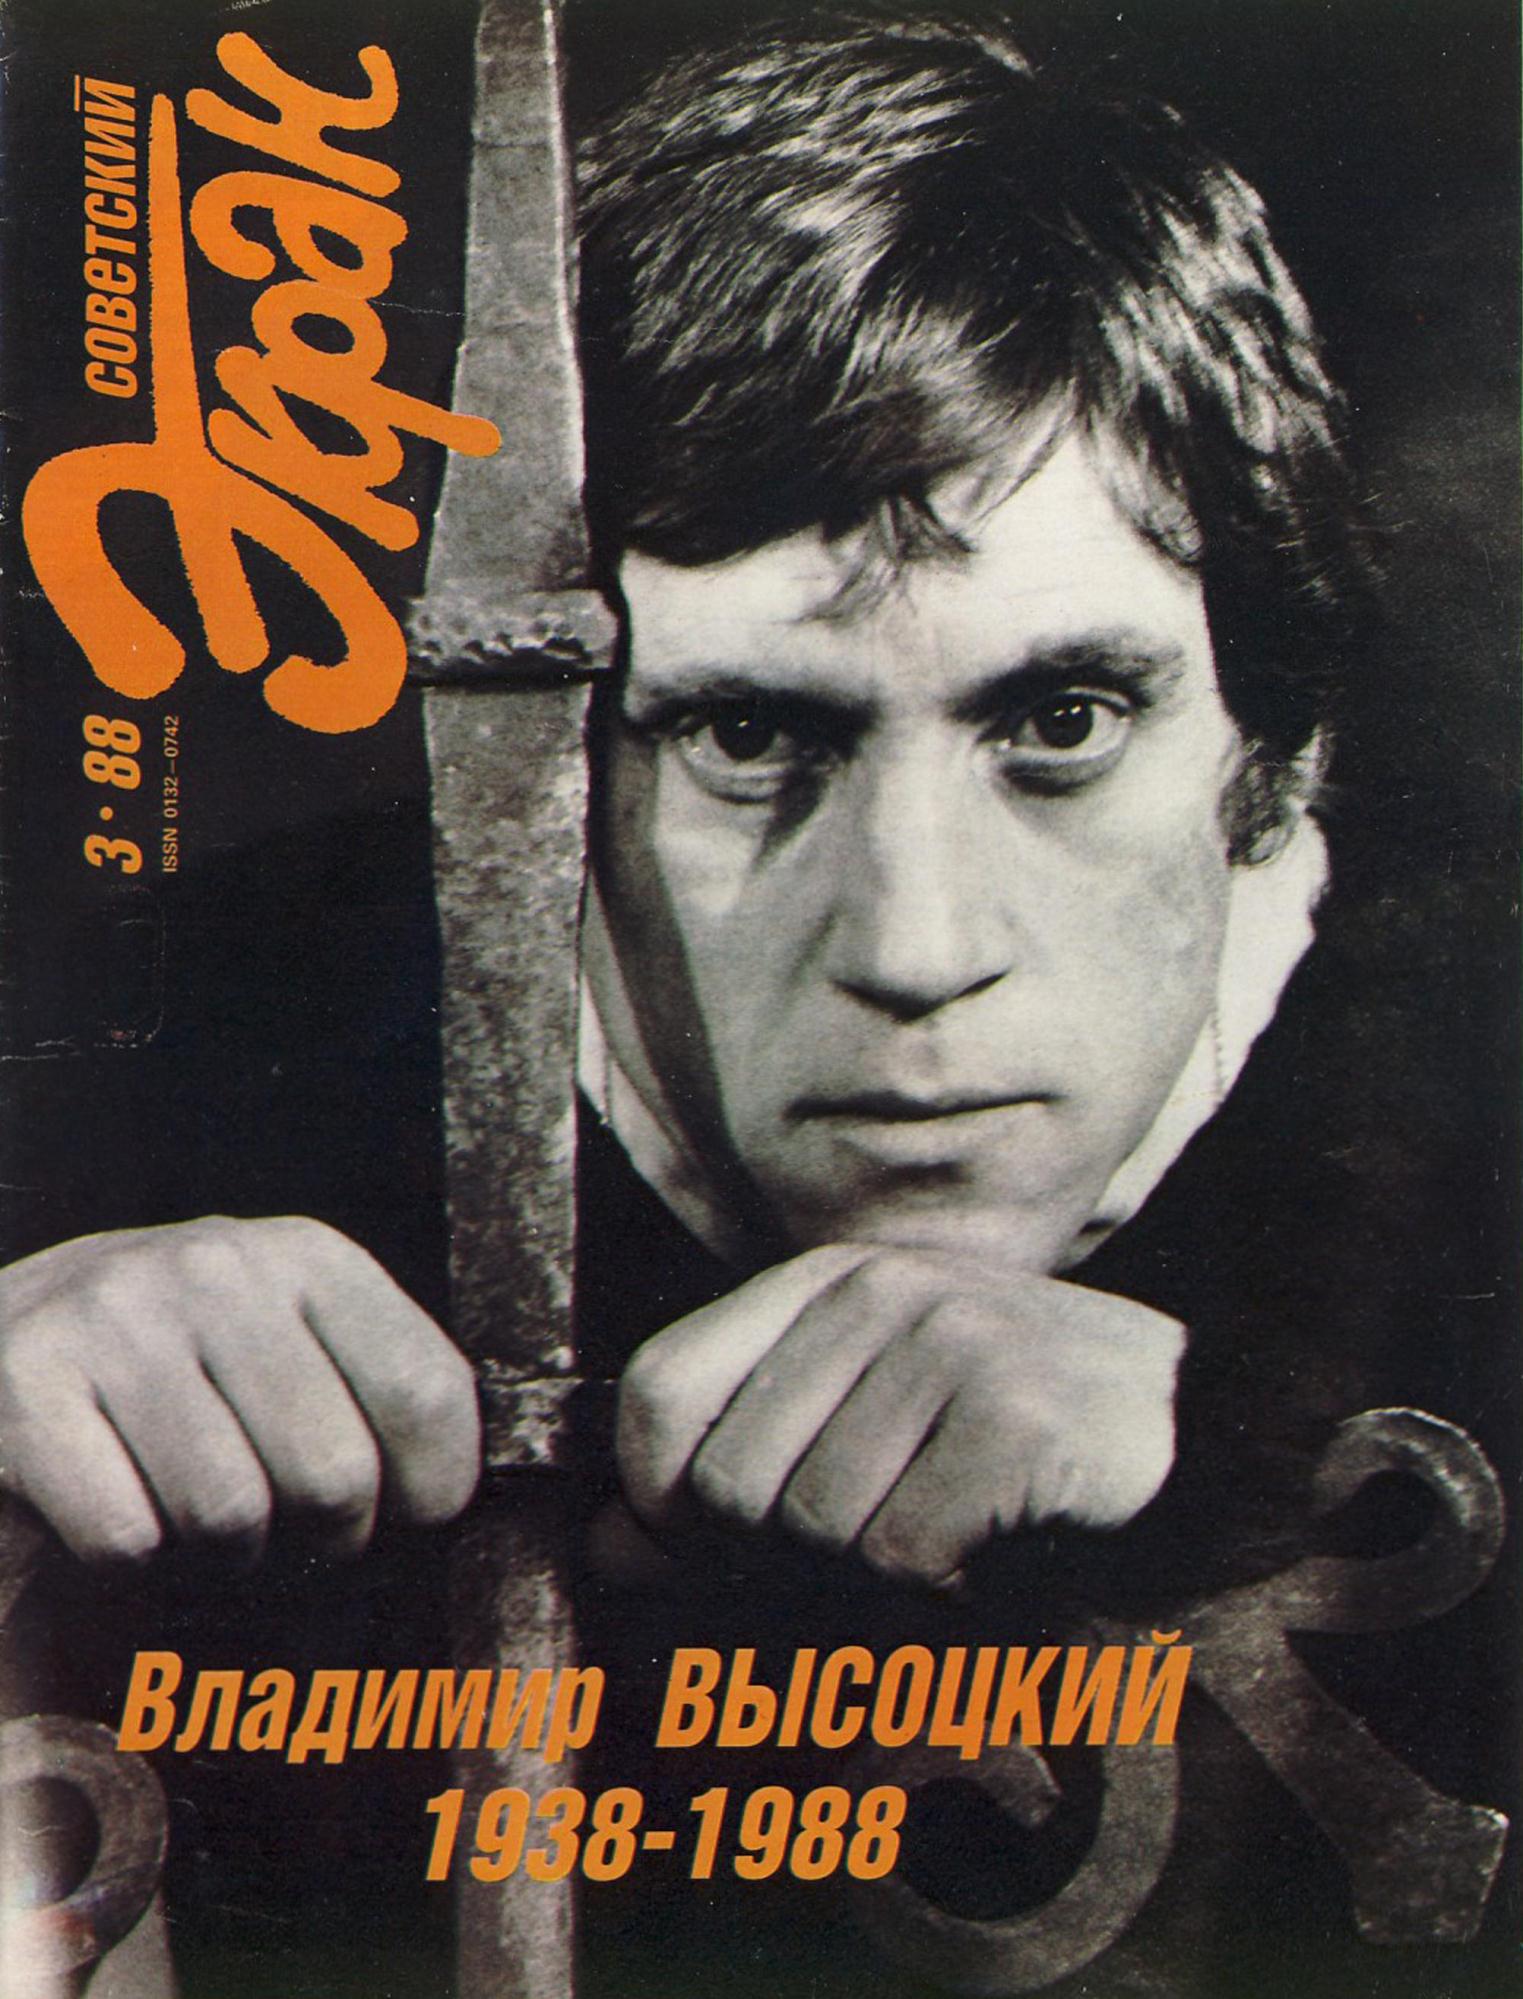 Обложка журнала «Советский Экран» (№ 3, 1988), посвященного 50-летию со дня рождения В. С. Высоцкого